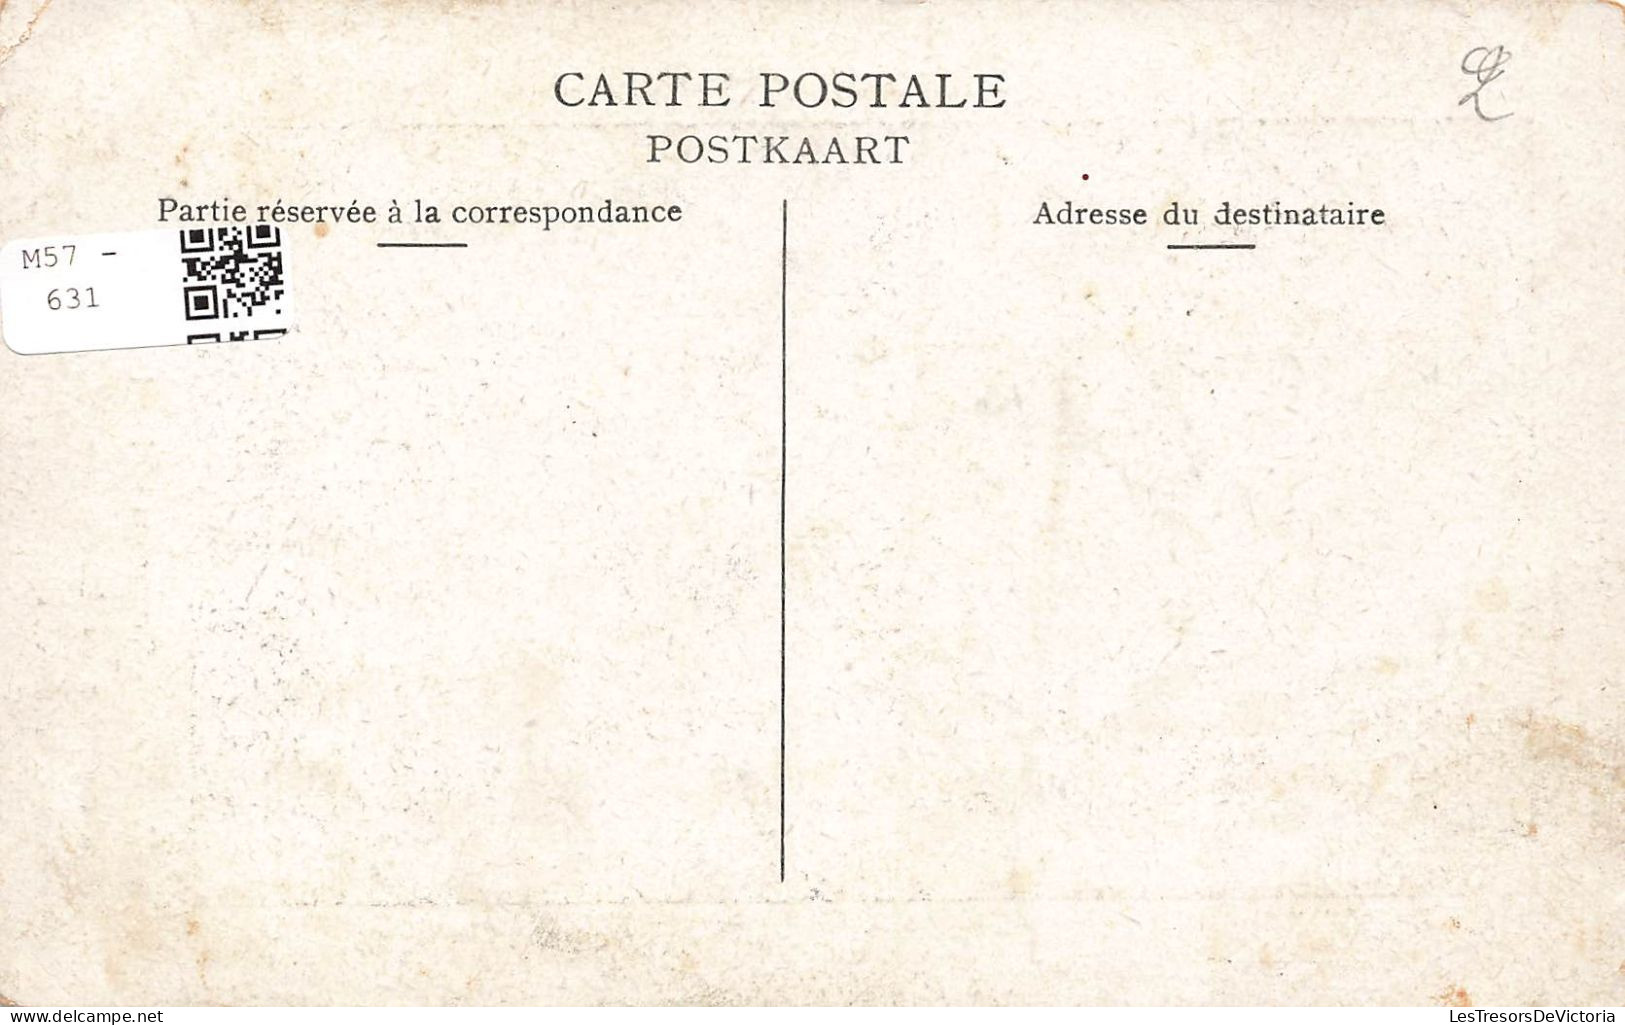 FAMILLES ROYALES - Presque Reine - Madame La Baronne Vaughan - Carte Postale Ancienne - Case Reali